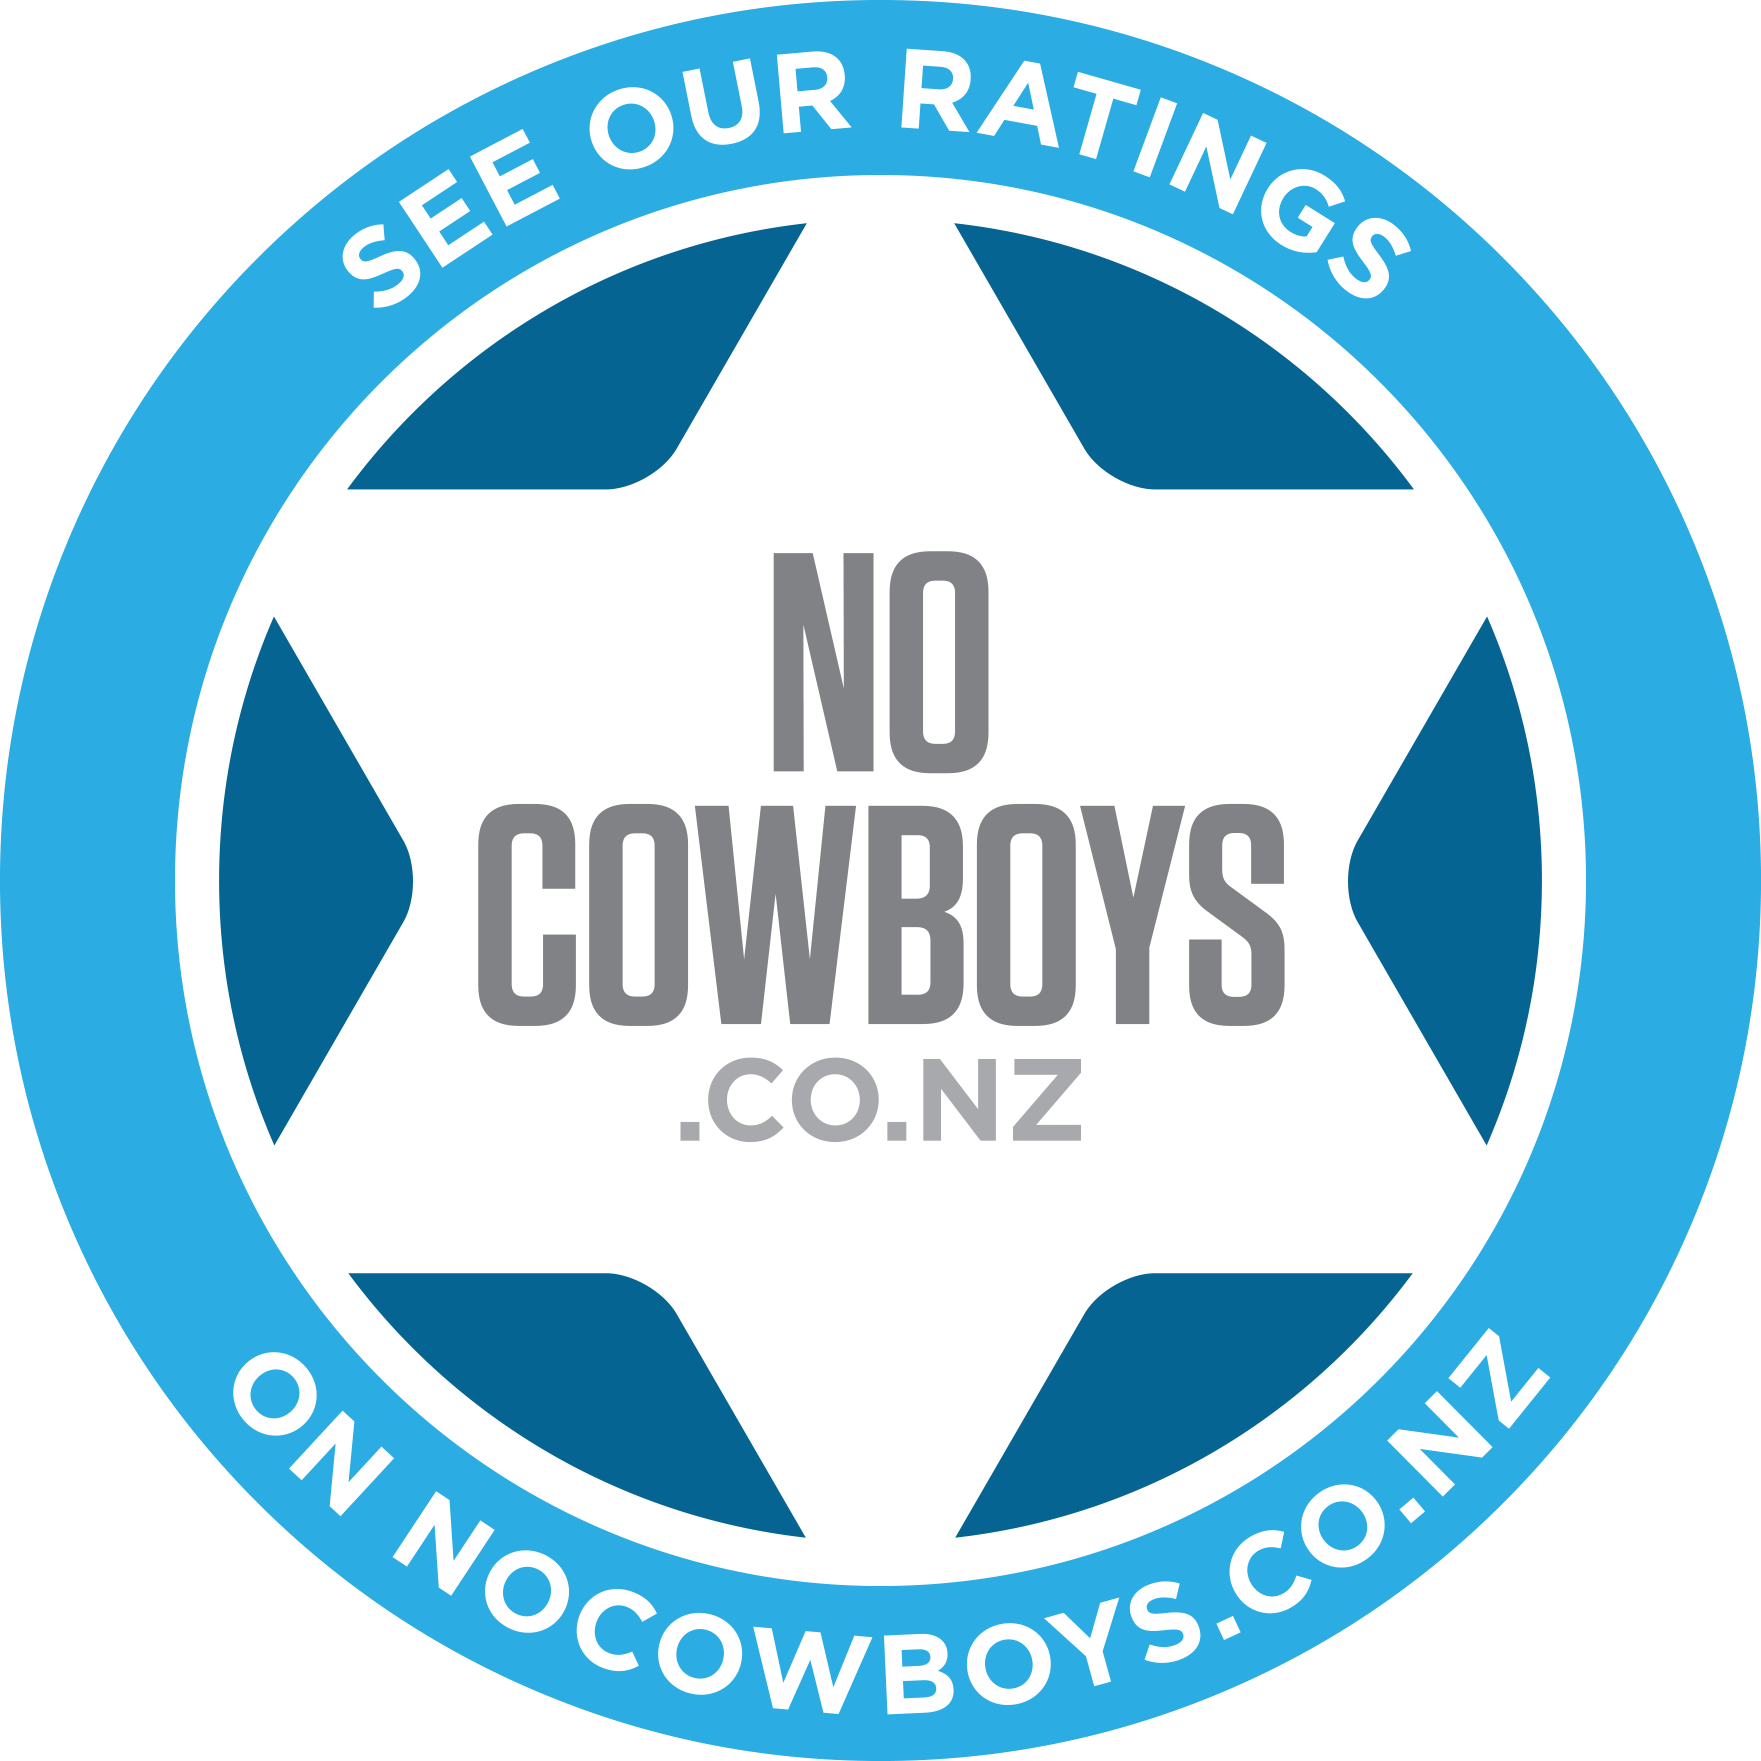 No Cowboys rating